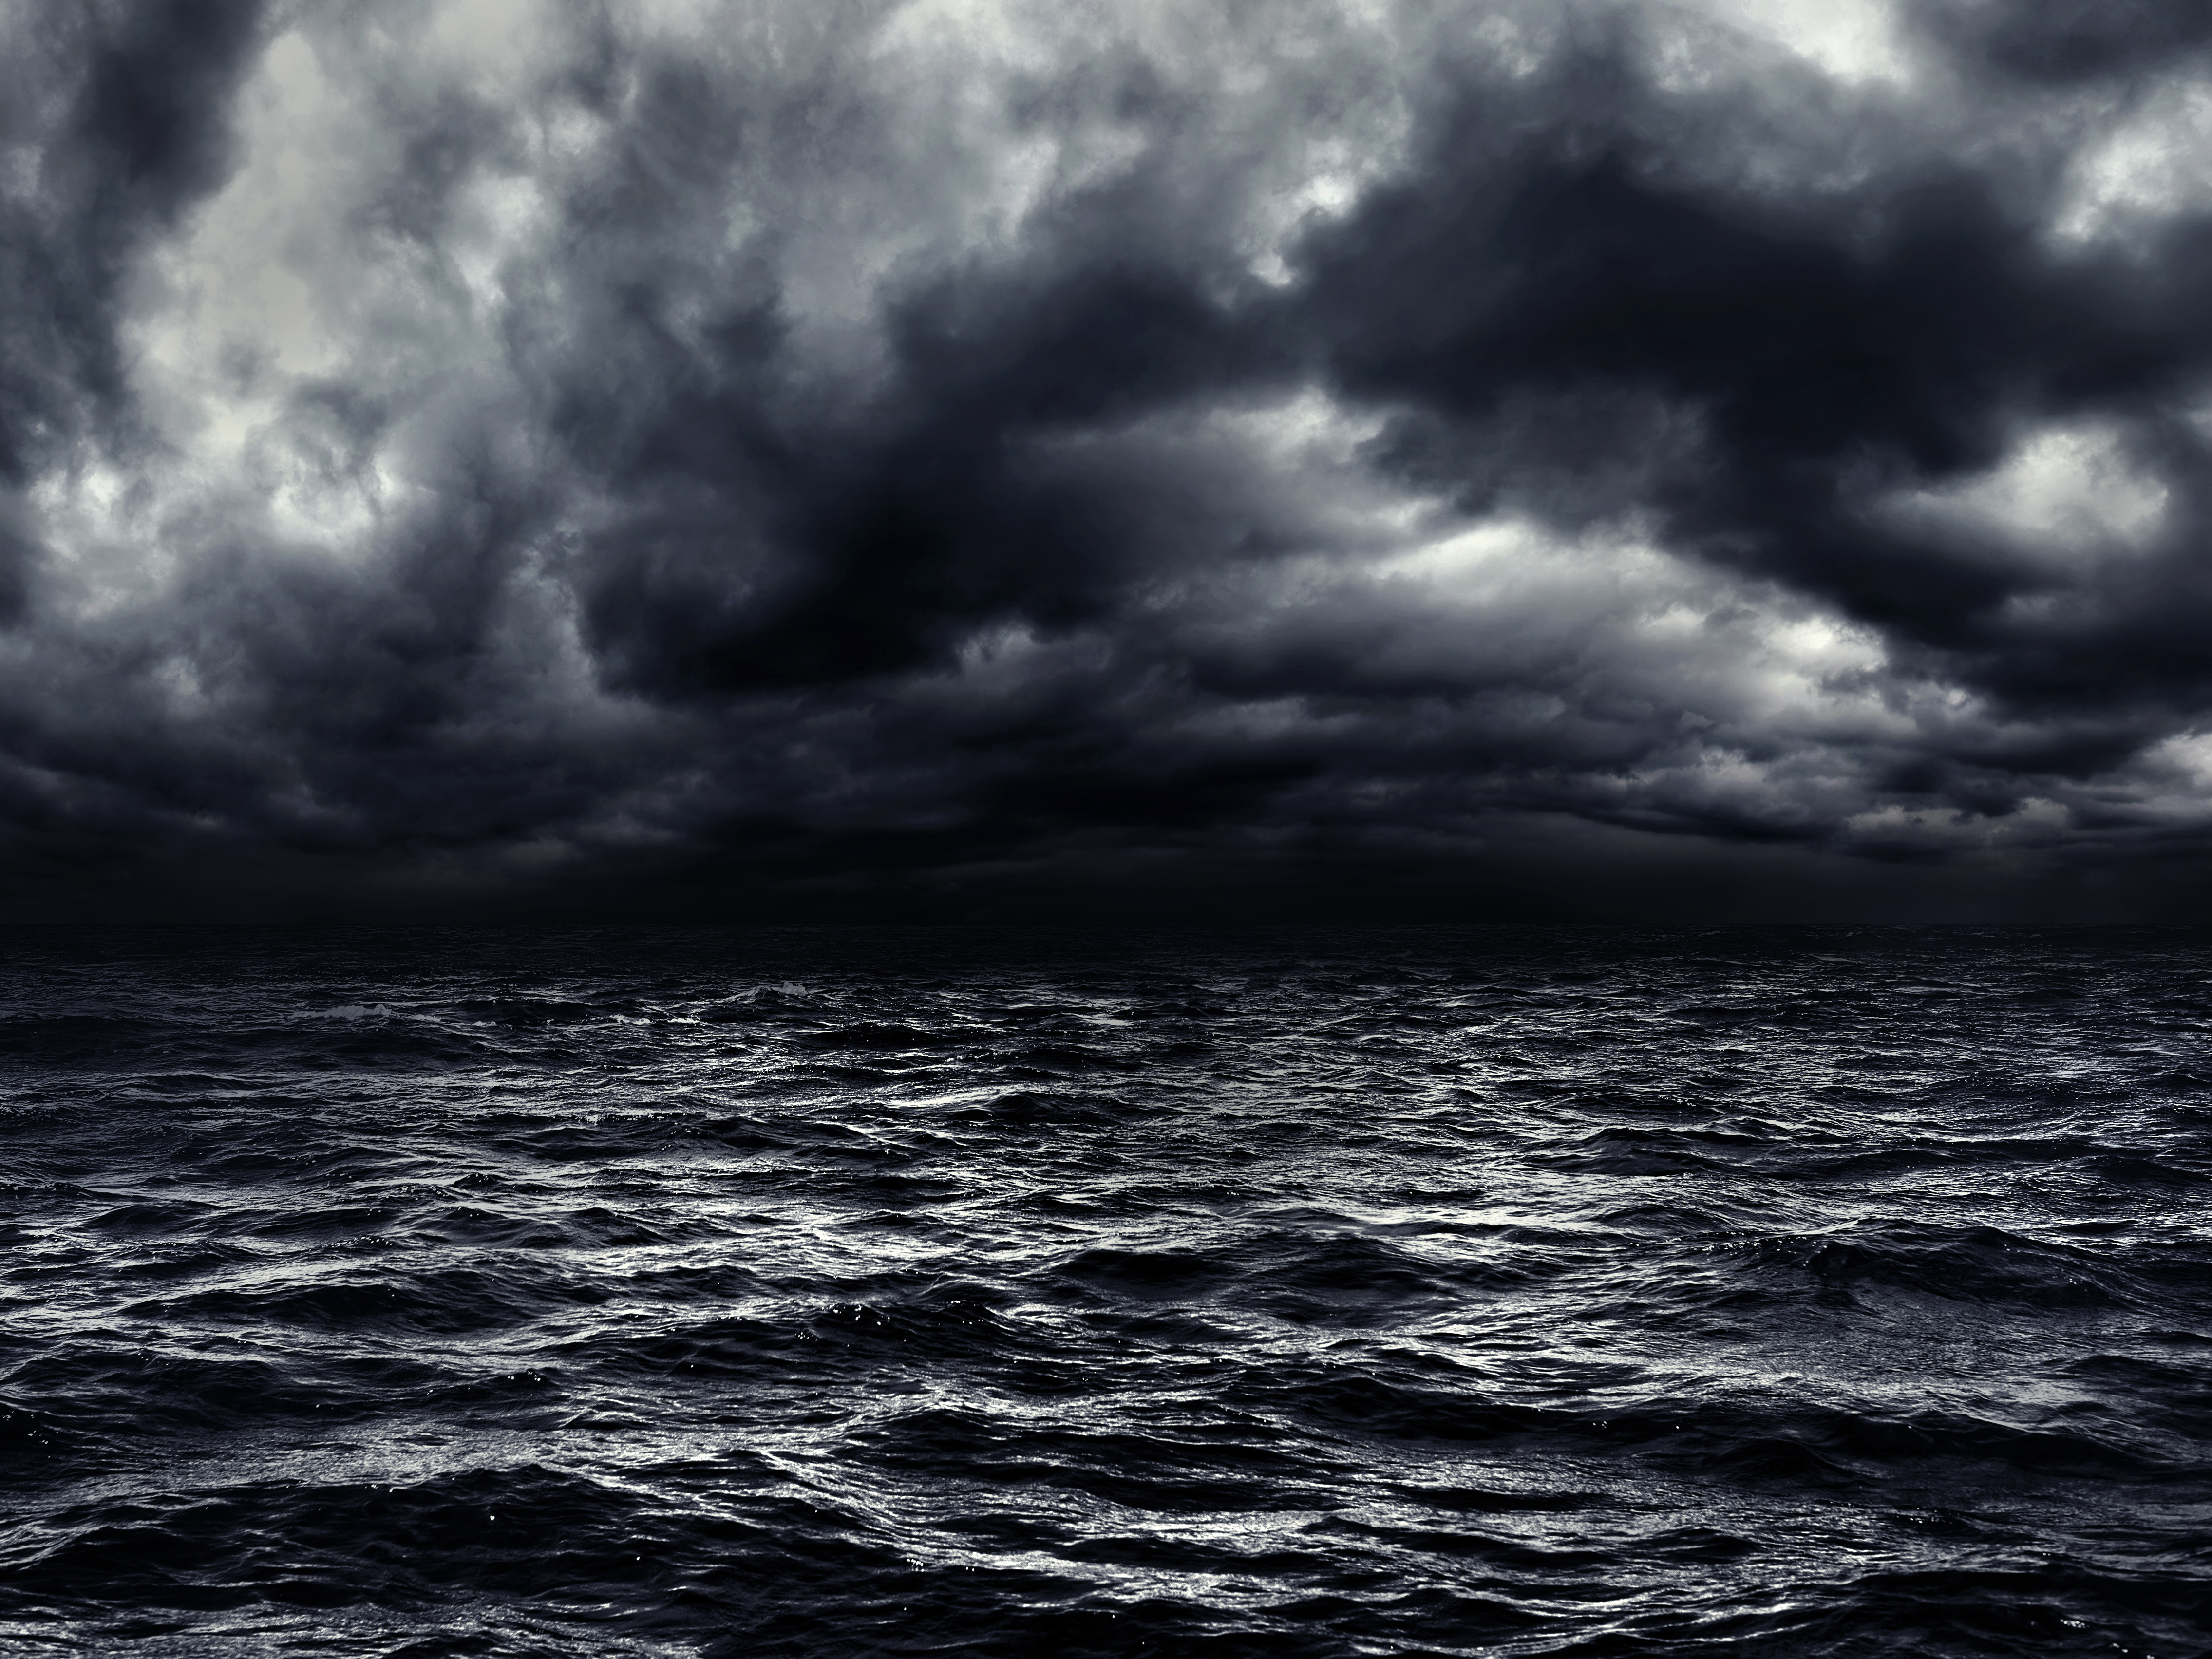 Oscuro mar tormentoso con un dramático cielo nublado. | Fuente: Shutterstock